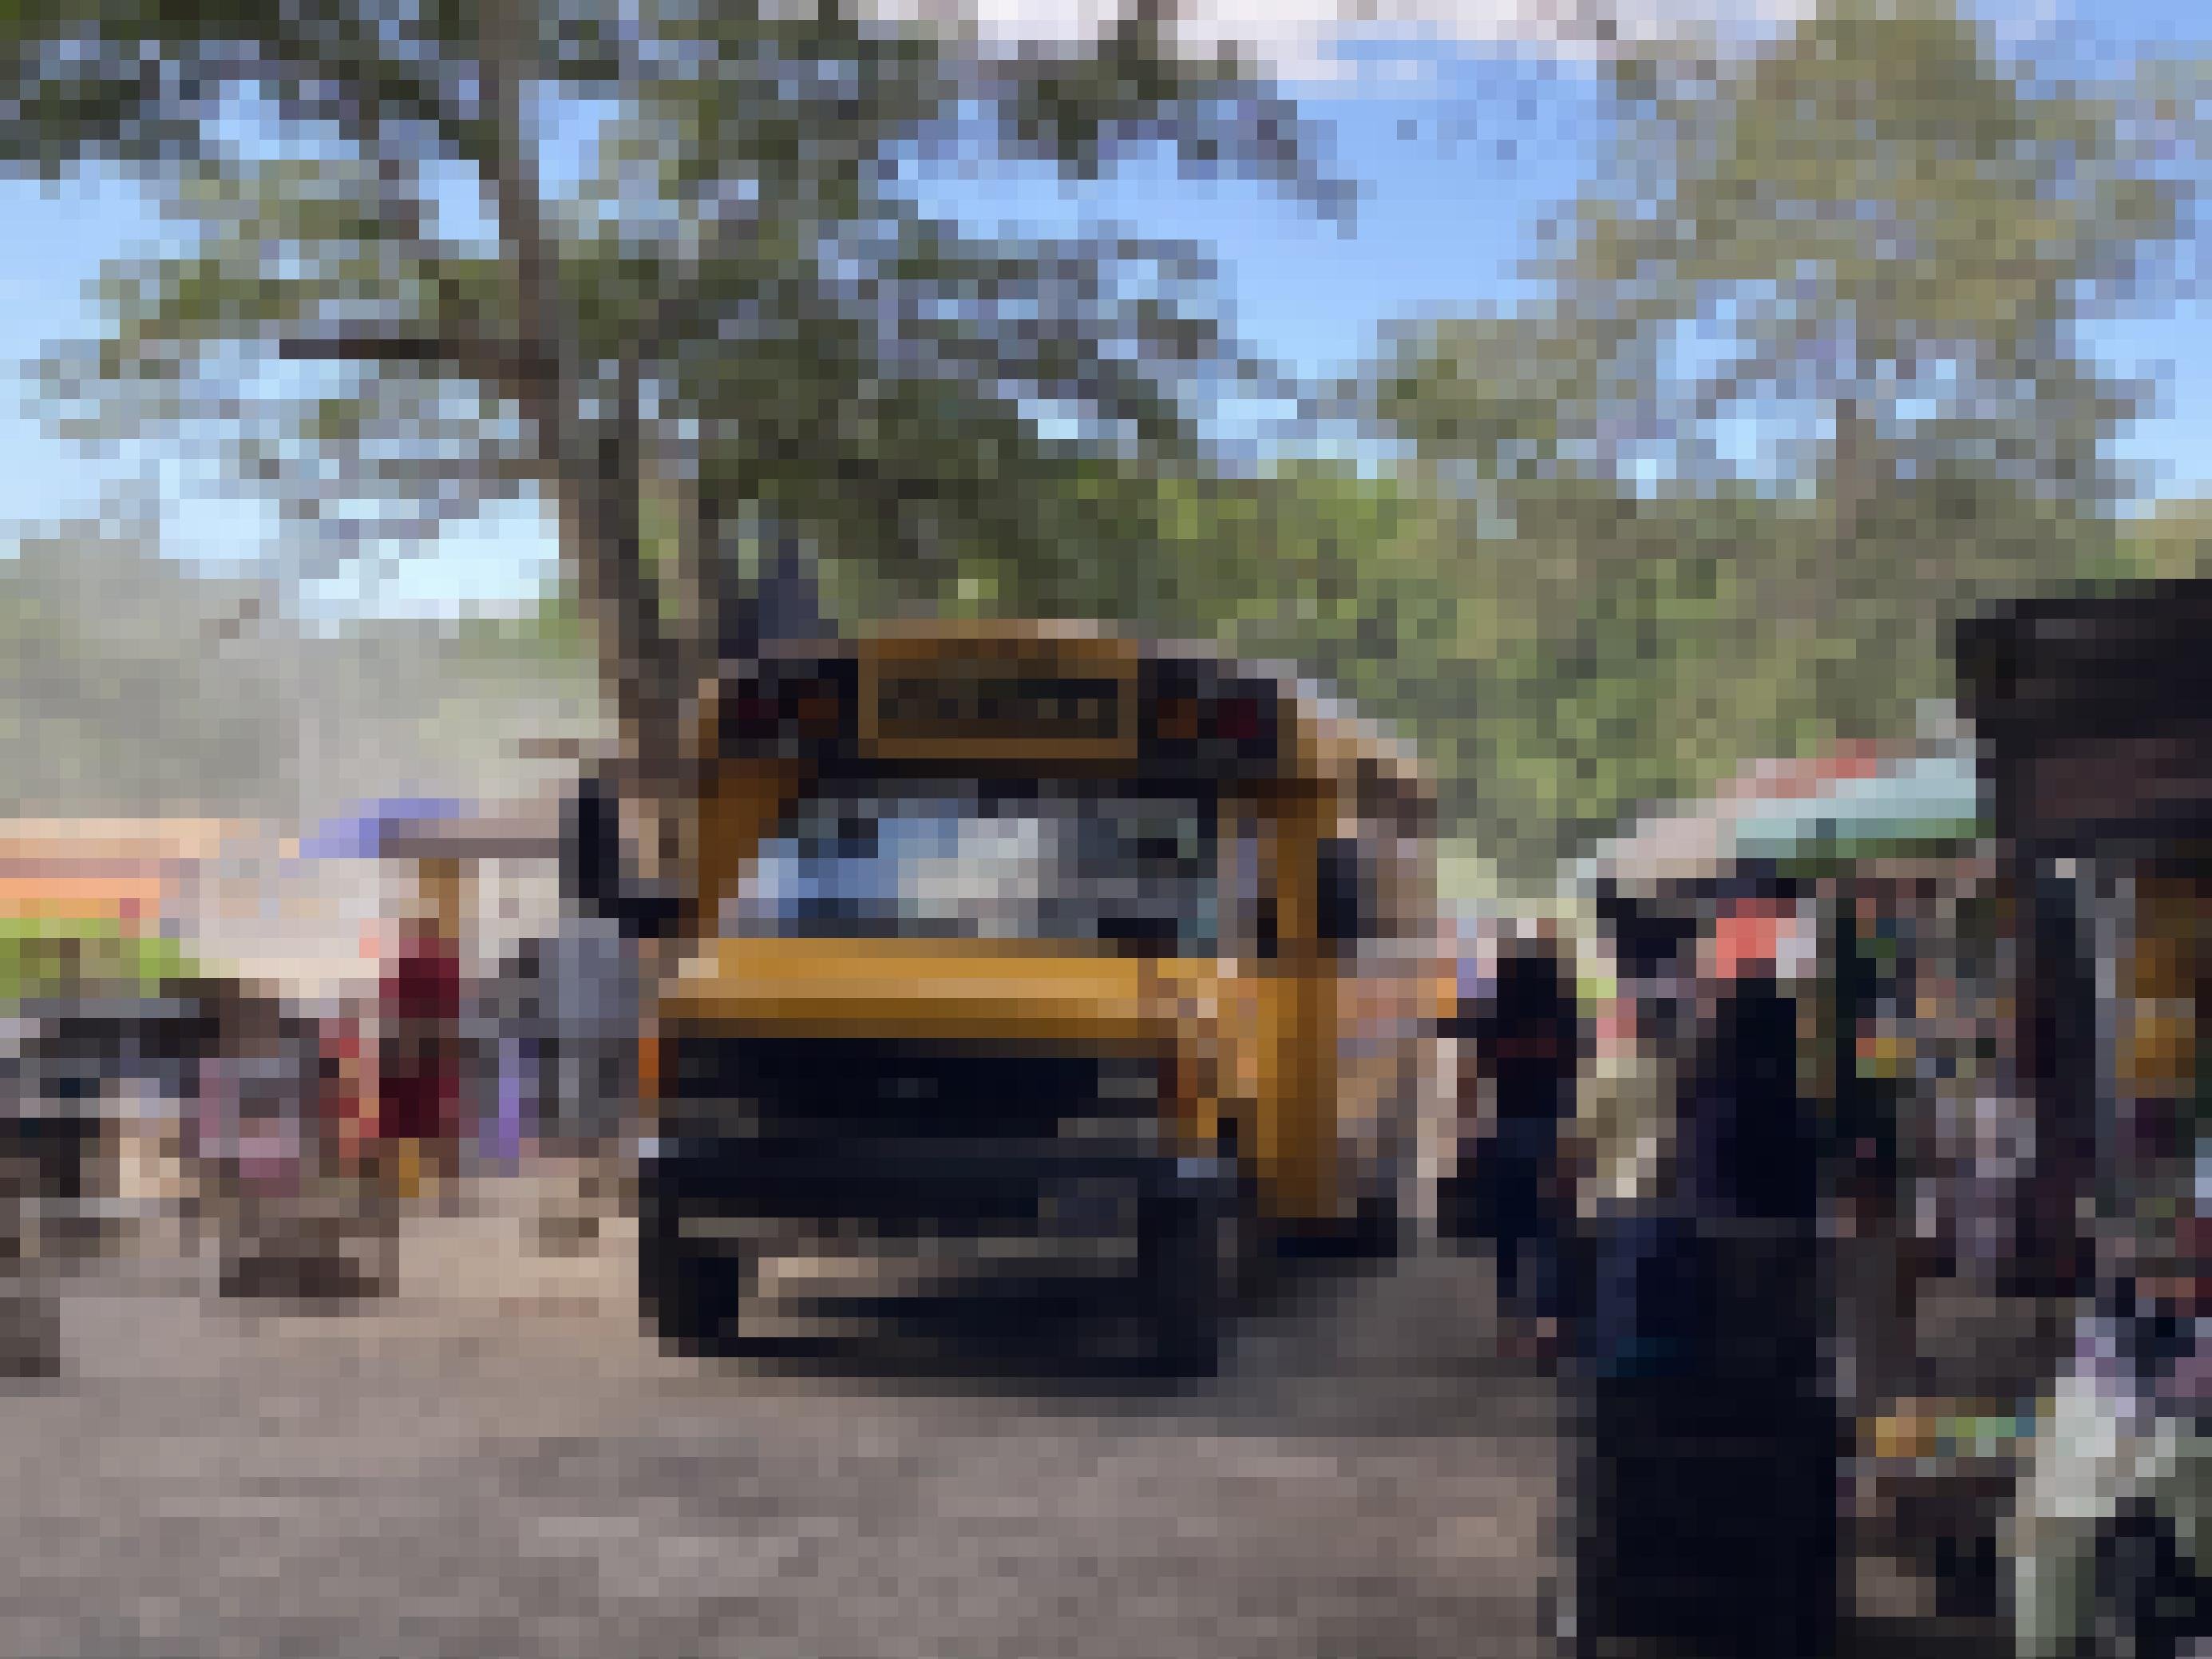 Ein alter gelber US-Schulbus fährt auf einer ungeteerten, staubigen Piste an Marktständen vorbei.